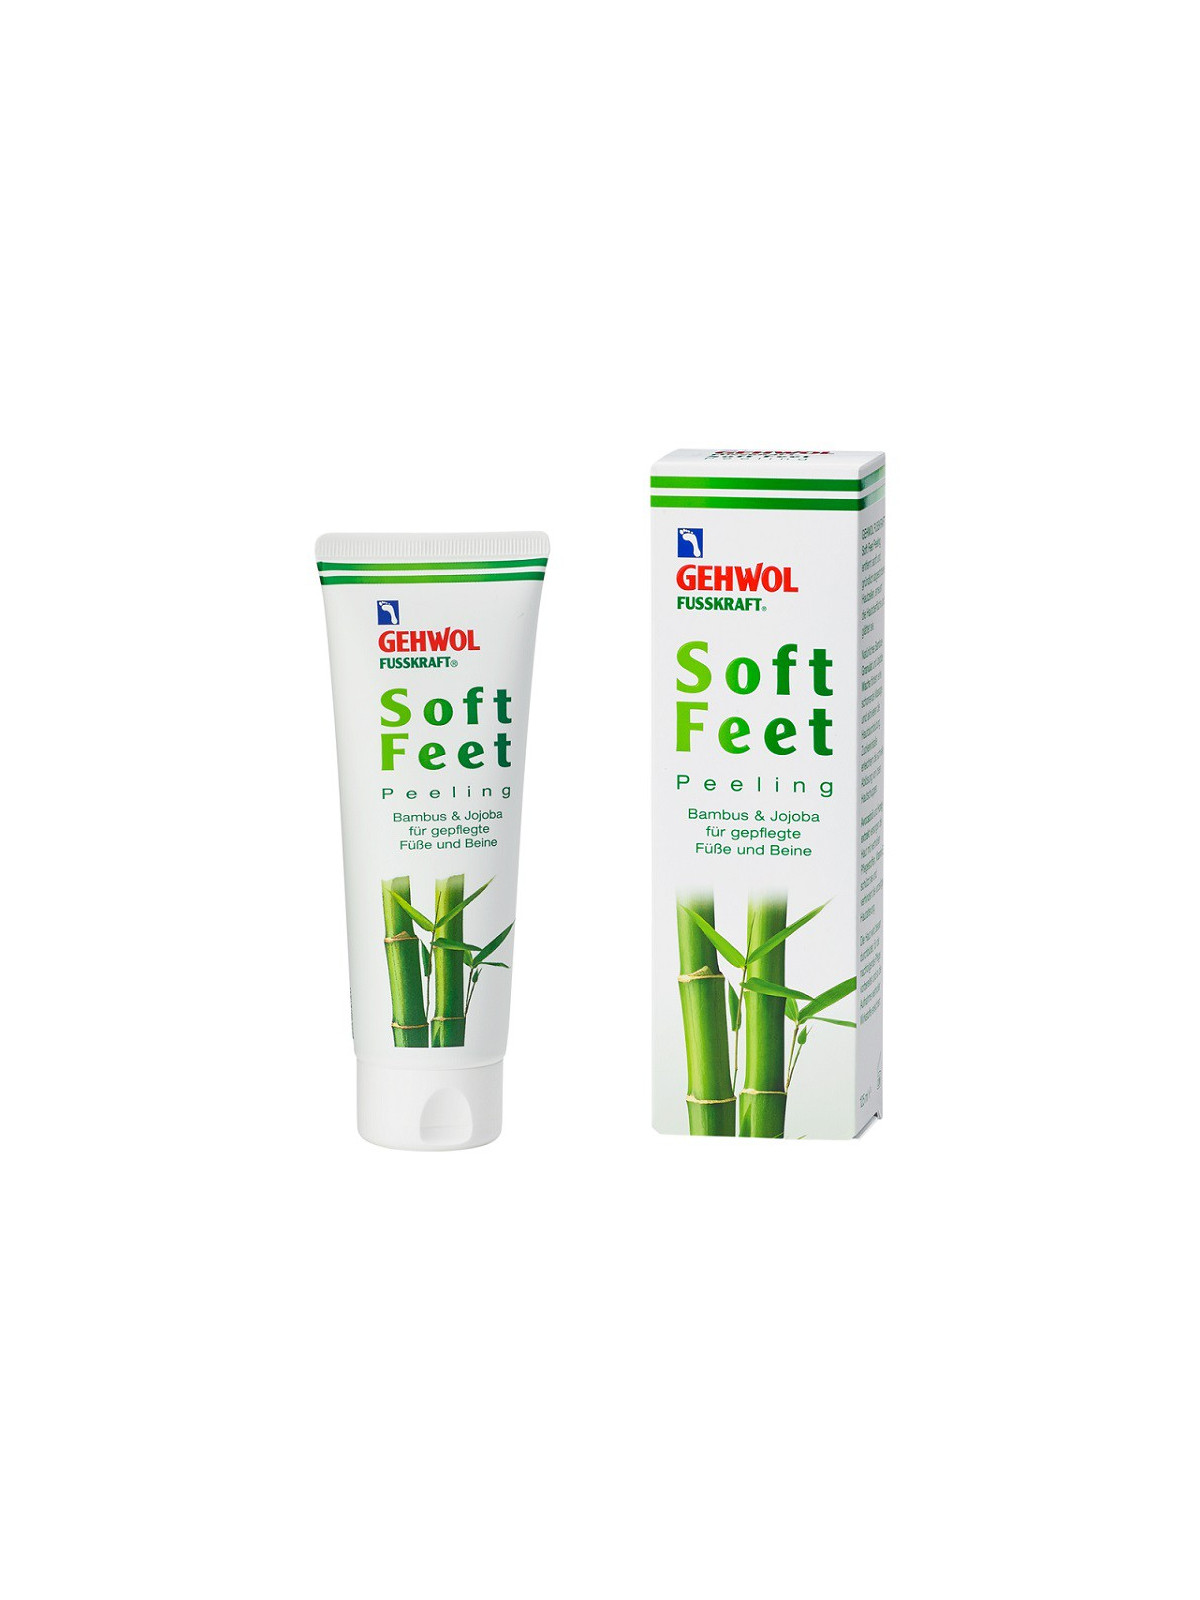 Gehwol Šveičiamasis kojų kremas su bambukų pudra Fusskraft Soft Feet Scrub